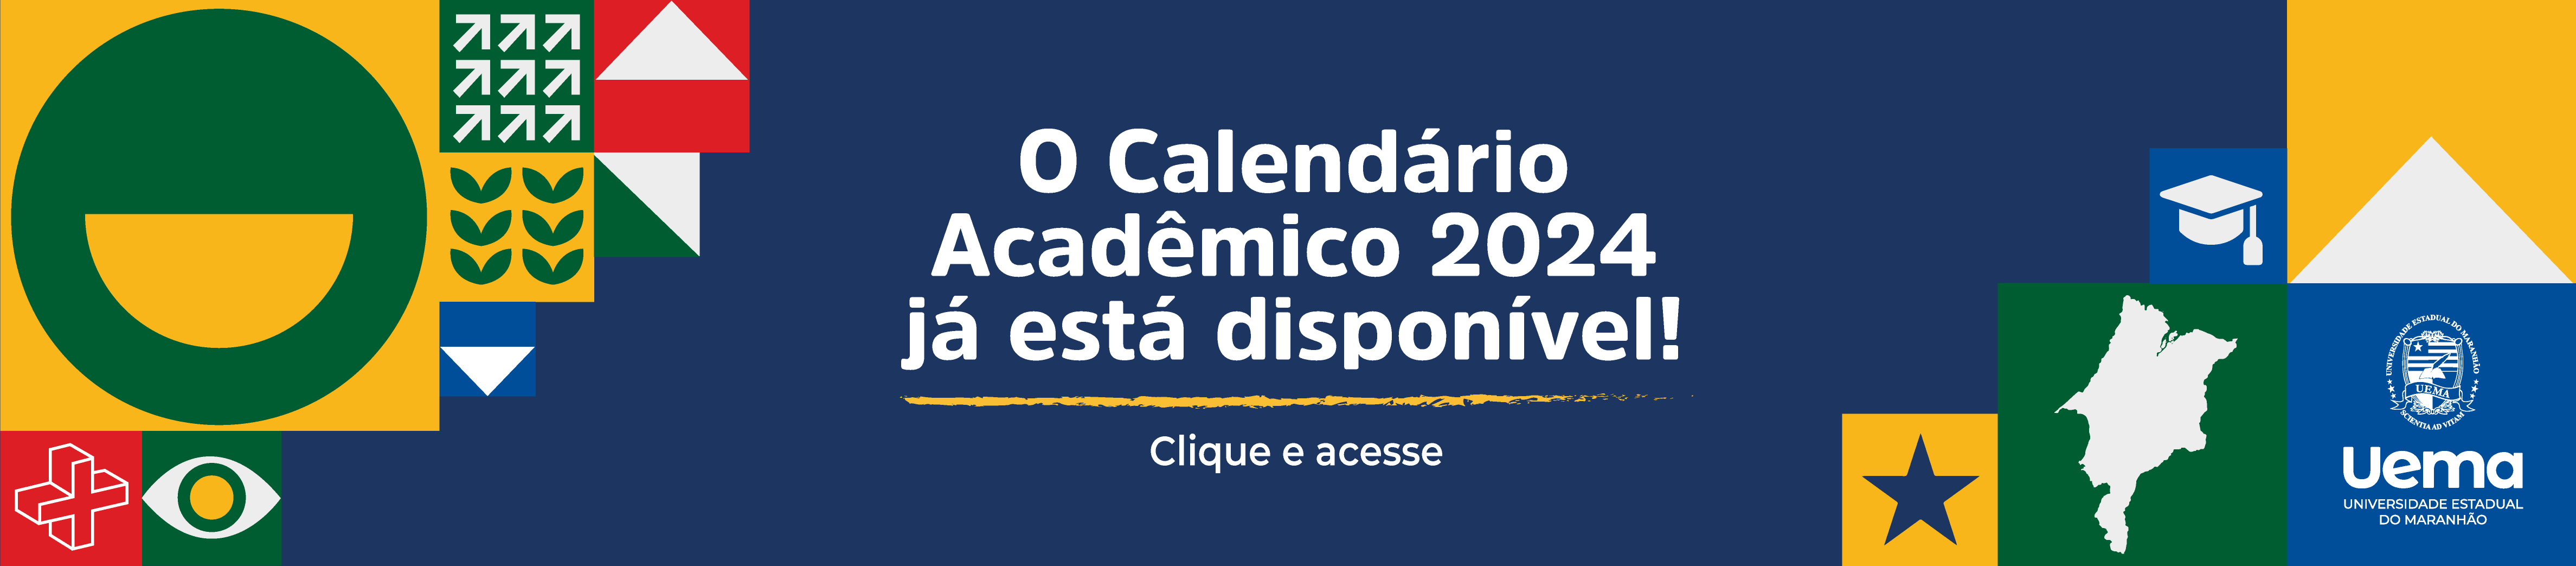 BANNER_SITE_-_Calendario_academico_2024